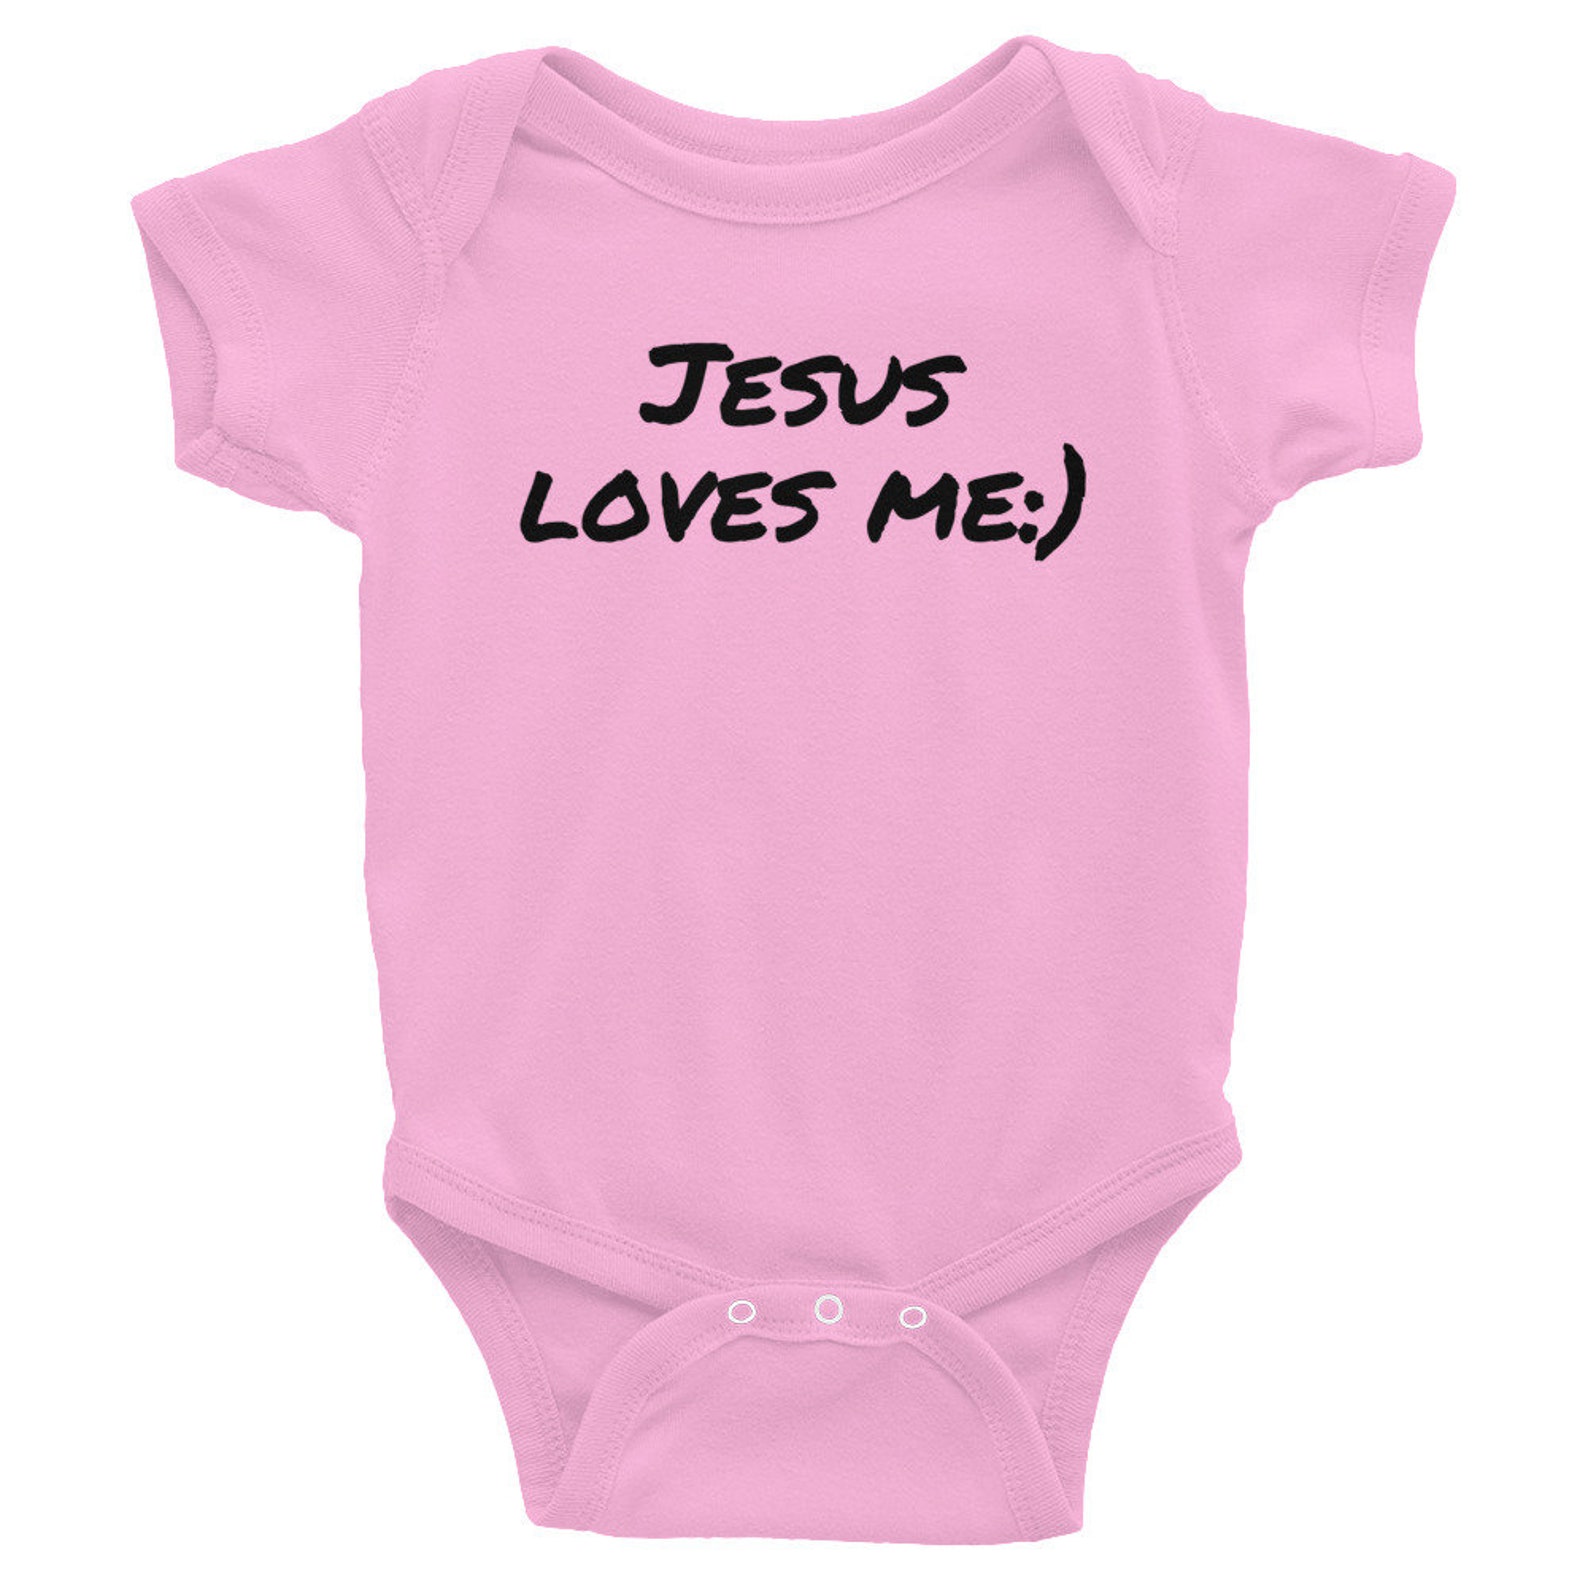 Infant Onesie Jesus Loves Me Baby Clothing Christian Gift | Etsy